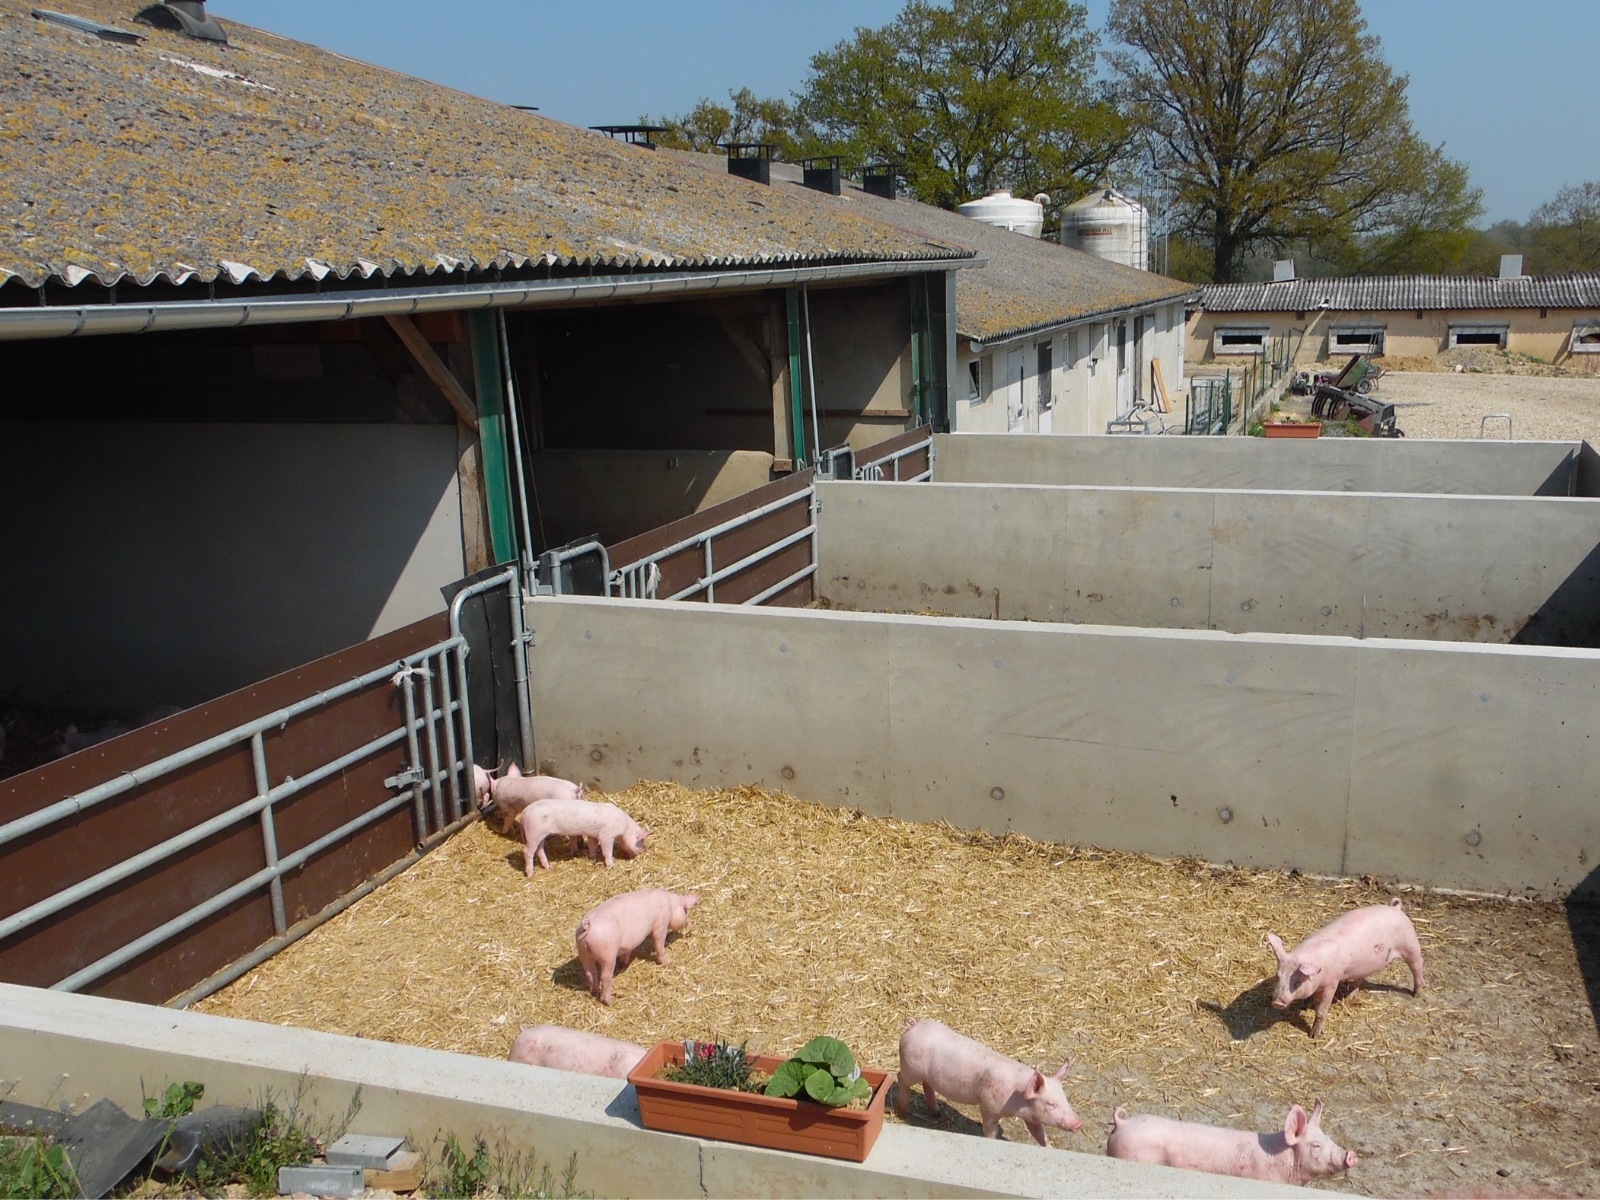 La Corbiniere Vente De Porc Mayenne Img 5